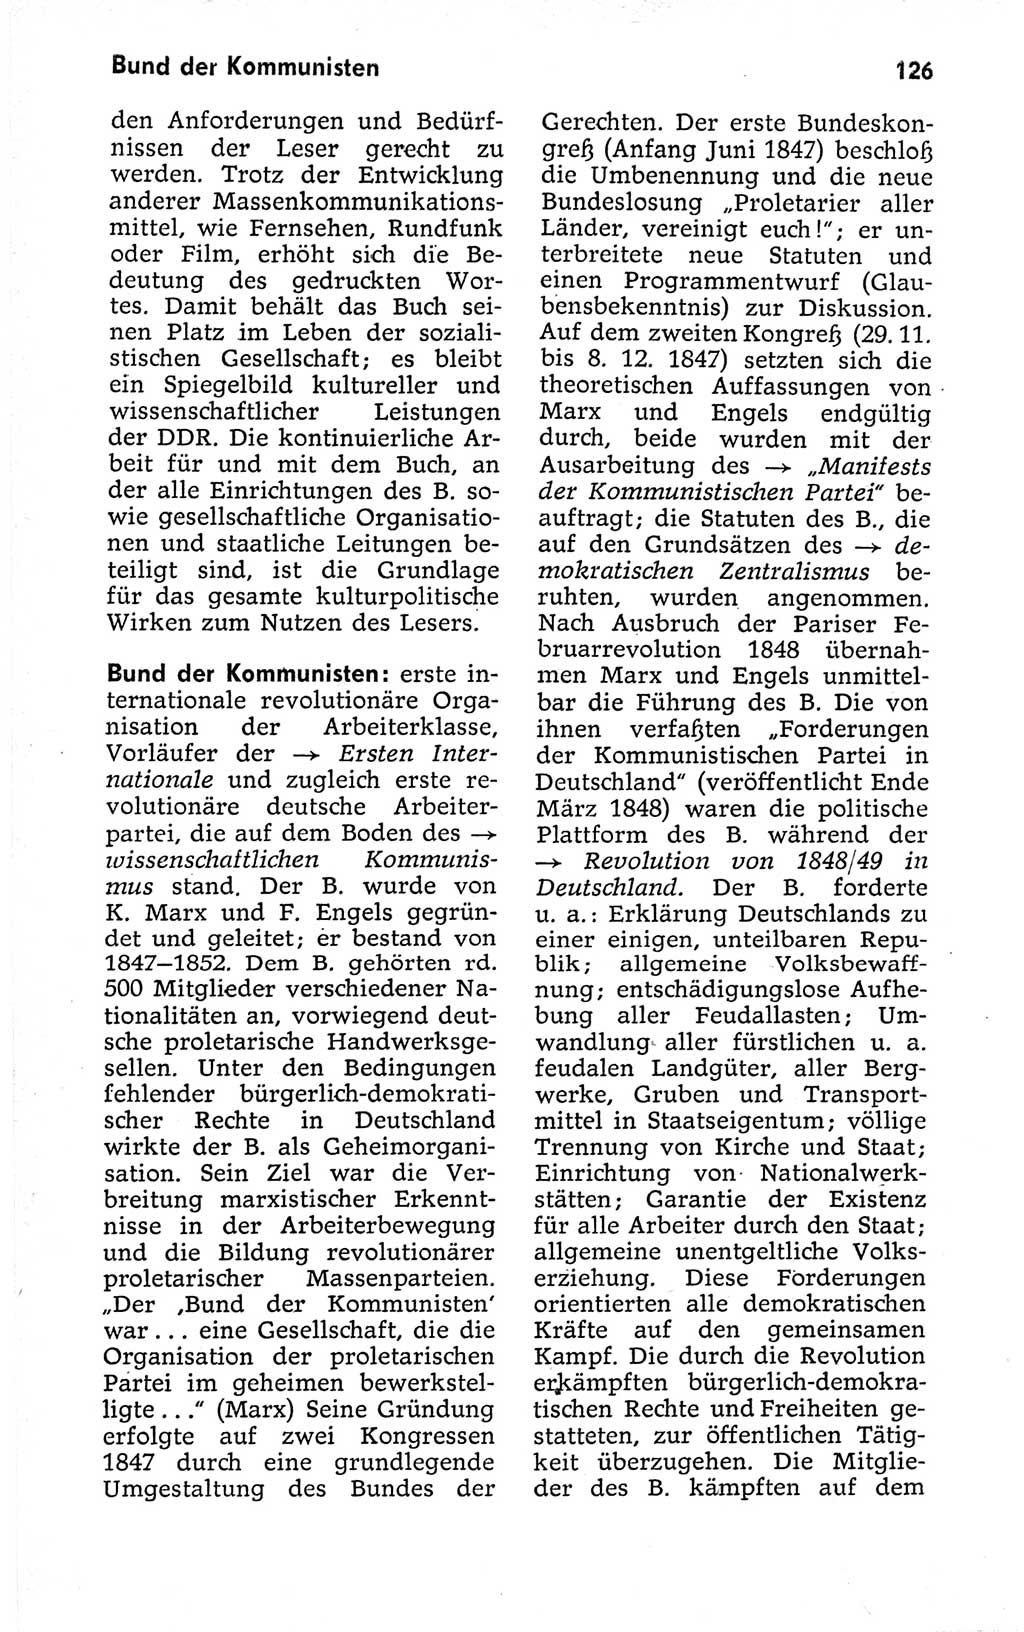 Kleines politisches Wörterbuch [Deutsche Demokratische Republik (DDR)] 1973, Seite 126 (Kl. pol. Wb. DDR 1973, S. 126)